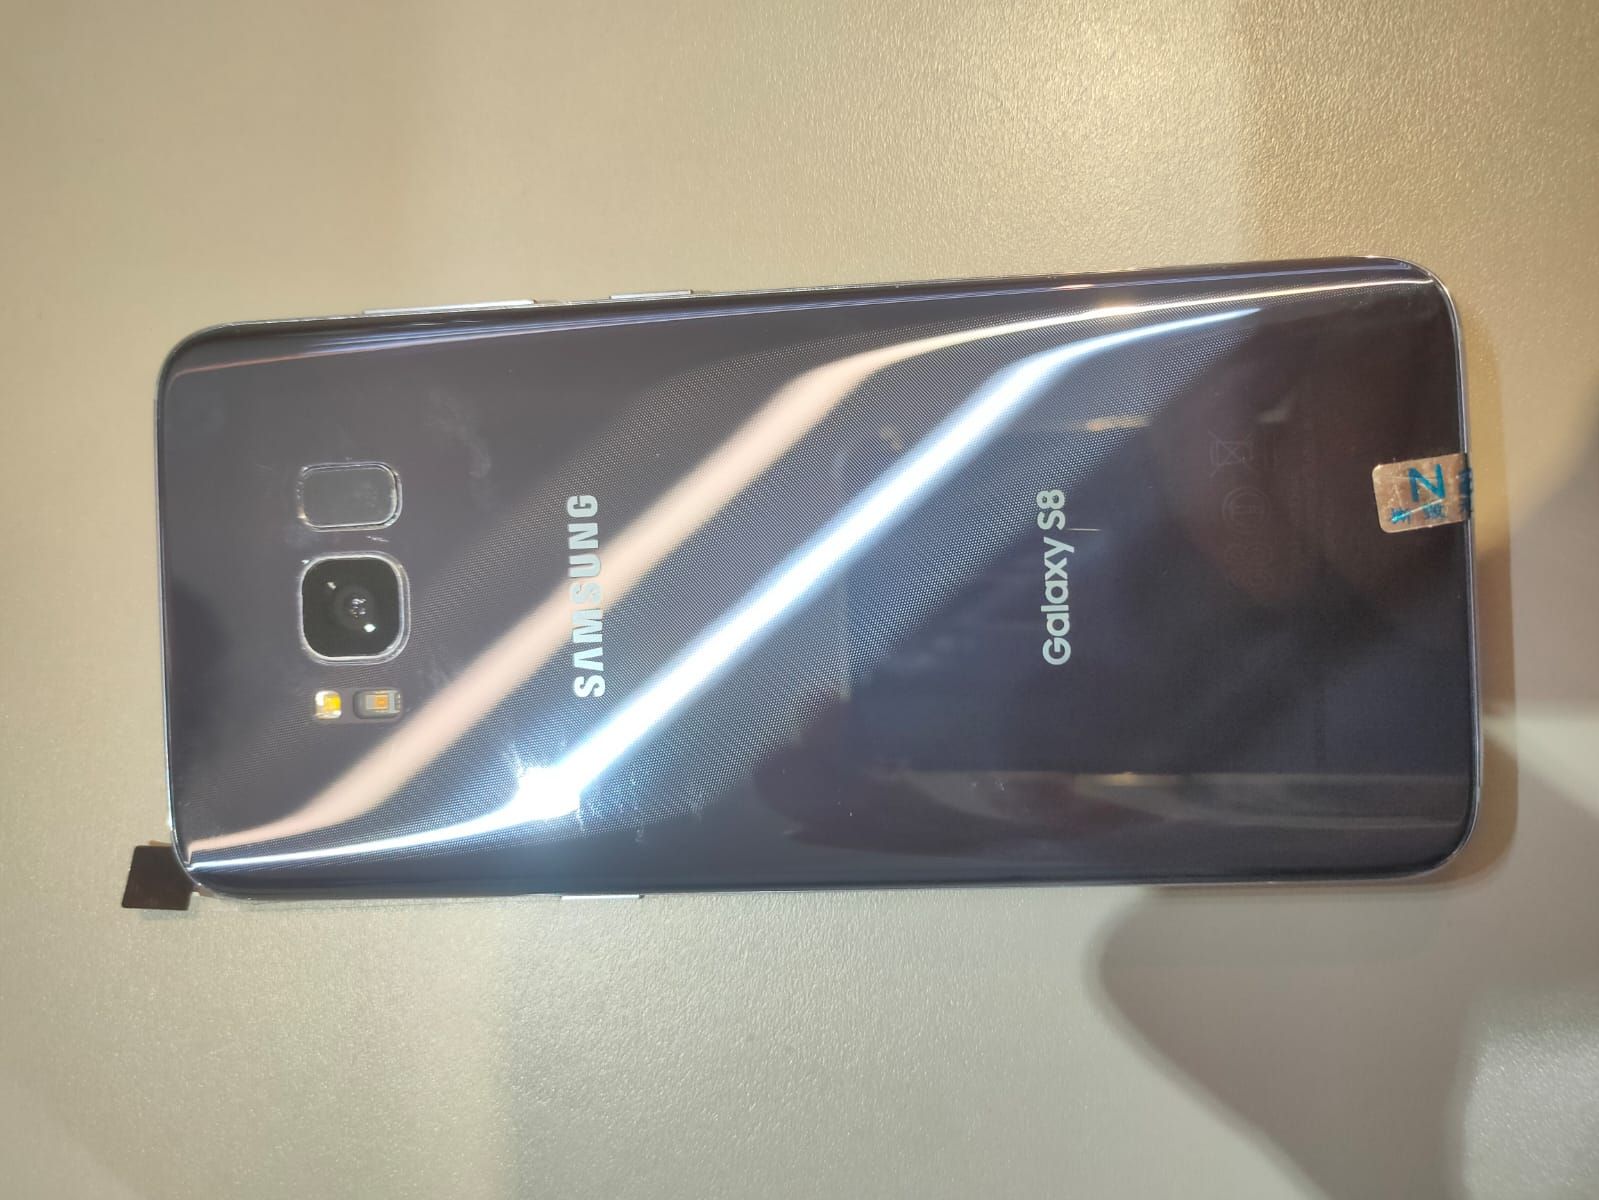 Samsung Galaxy S8 64Gb 